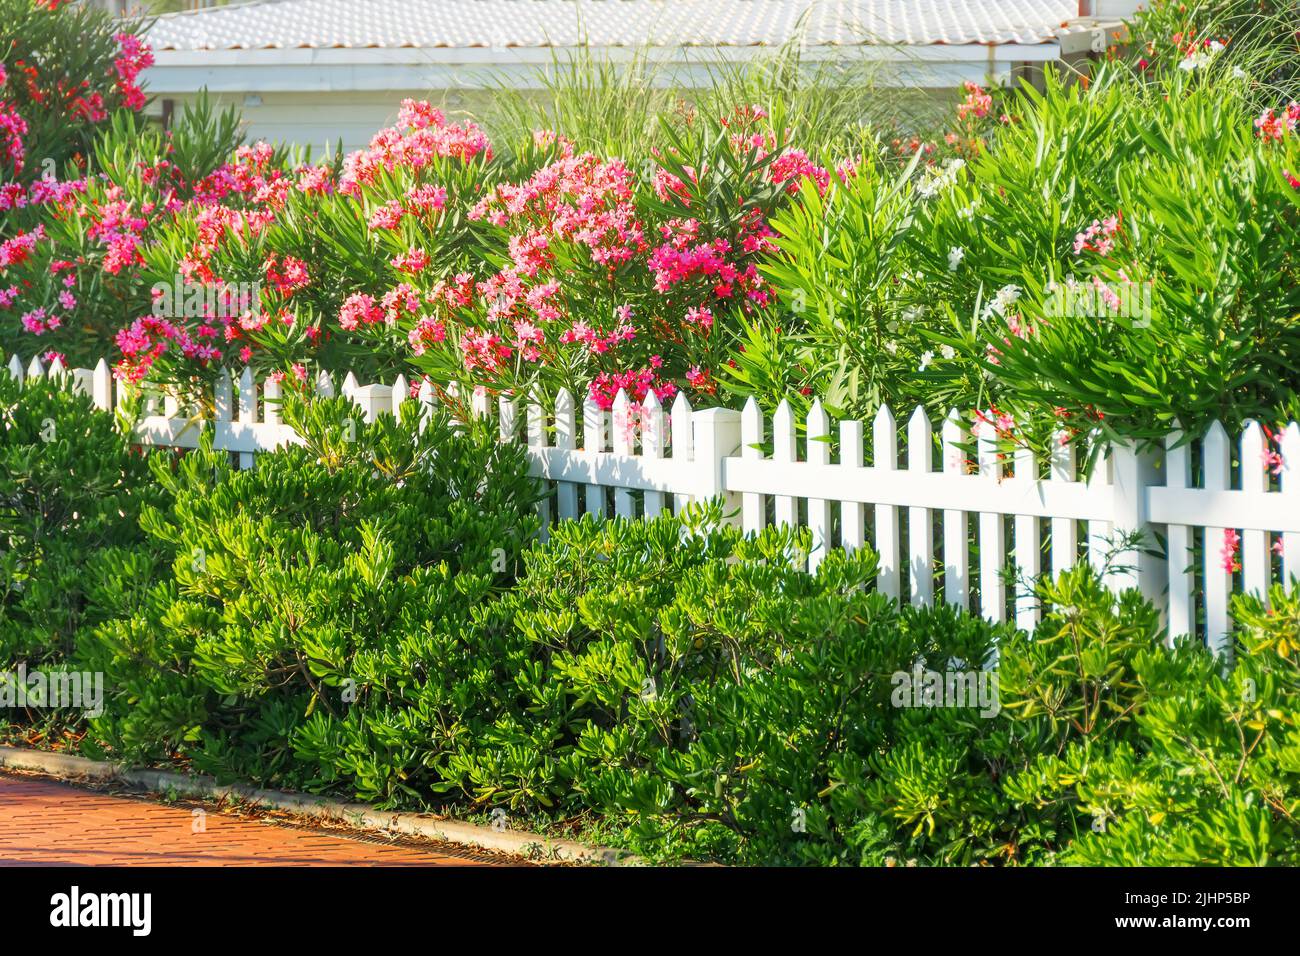 Verde callejón de la ciudad con adelfa en flor y arbustos verdes cerca de una valla de madera pintada de blanco Foto de stock